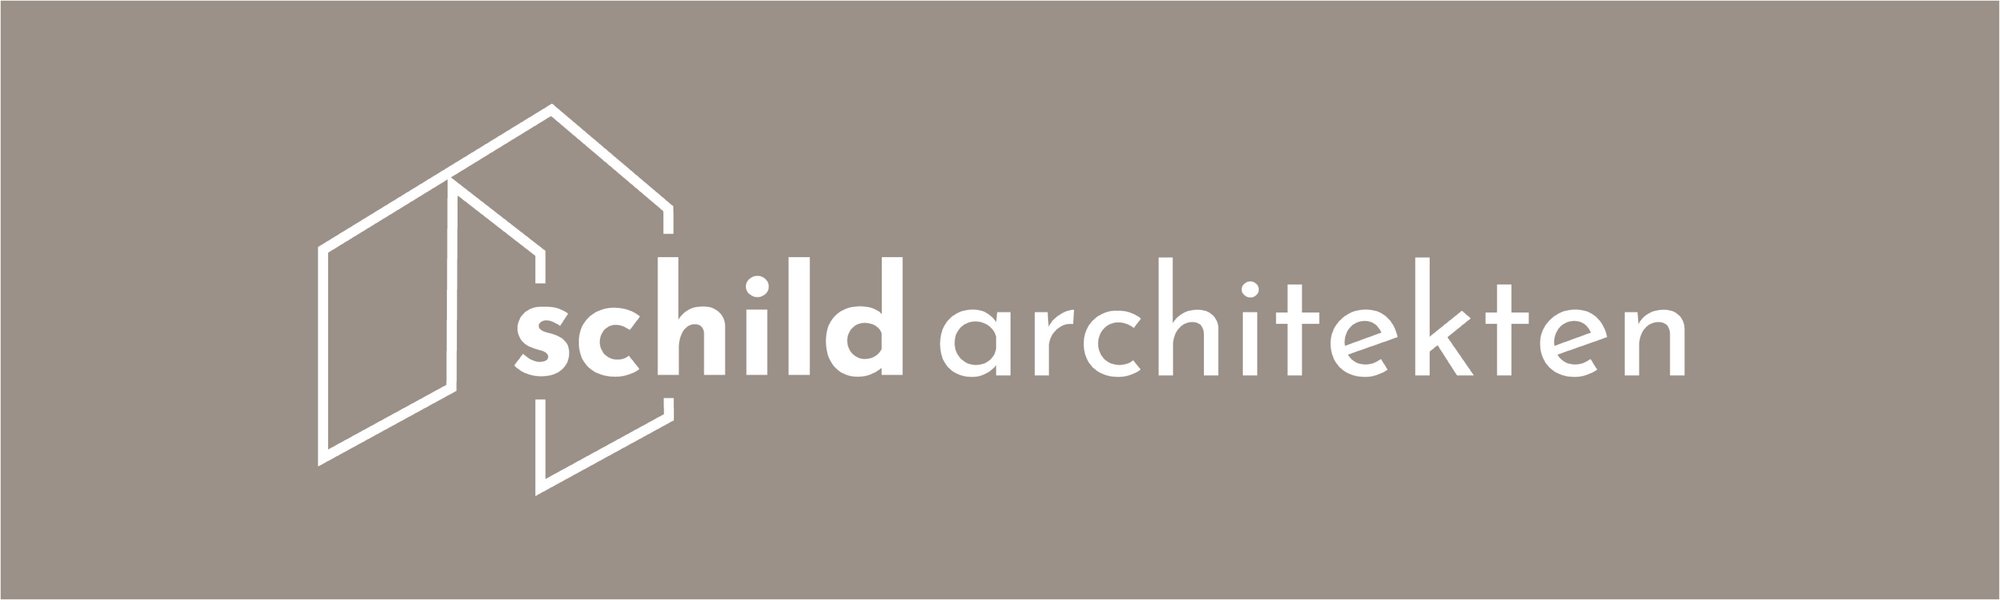 Schild Architekten Branding